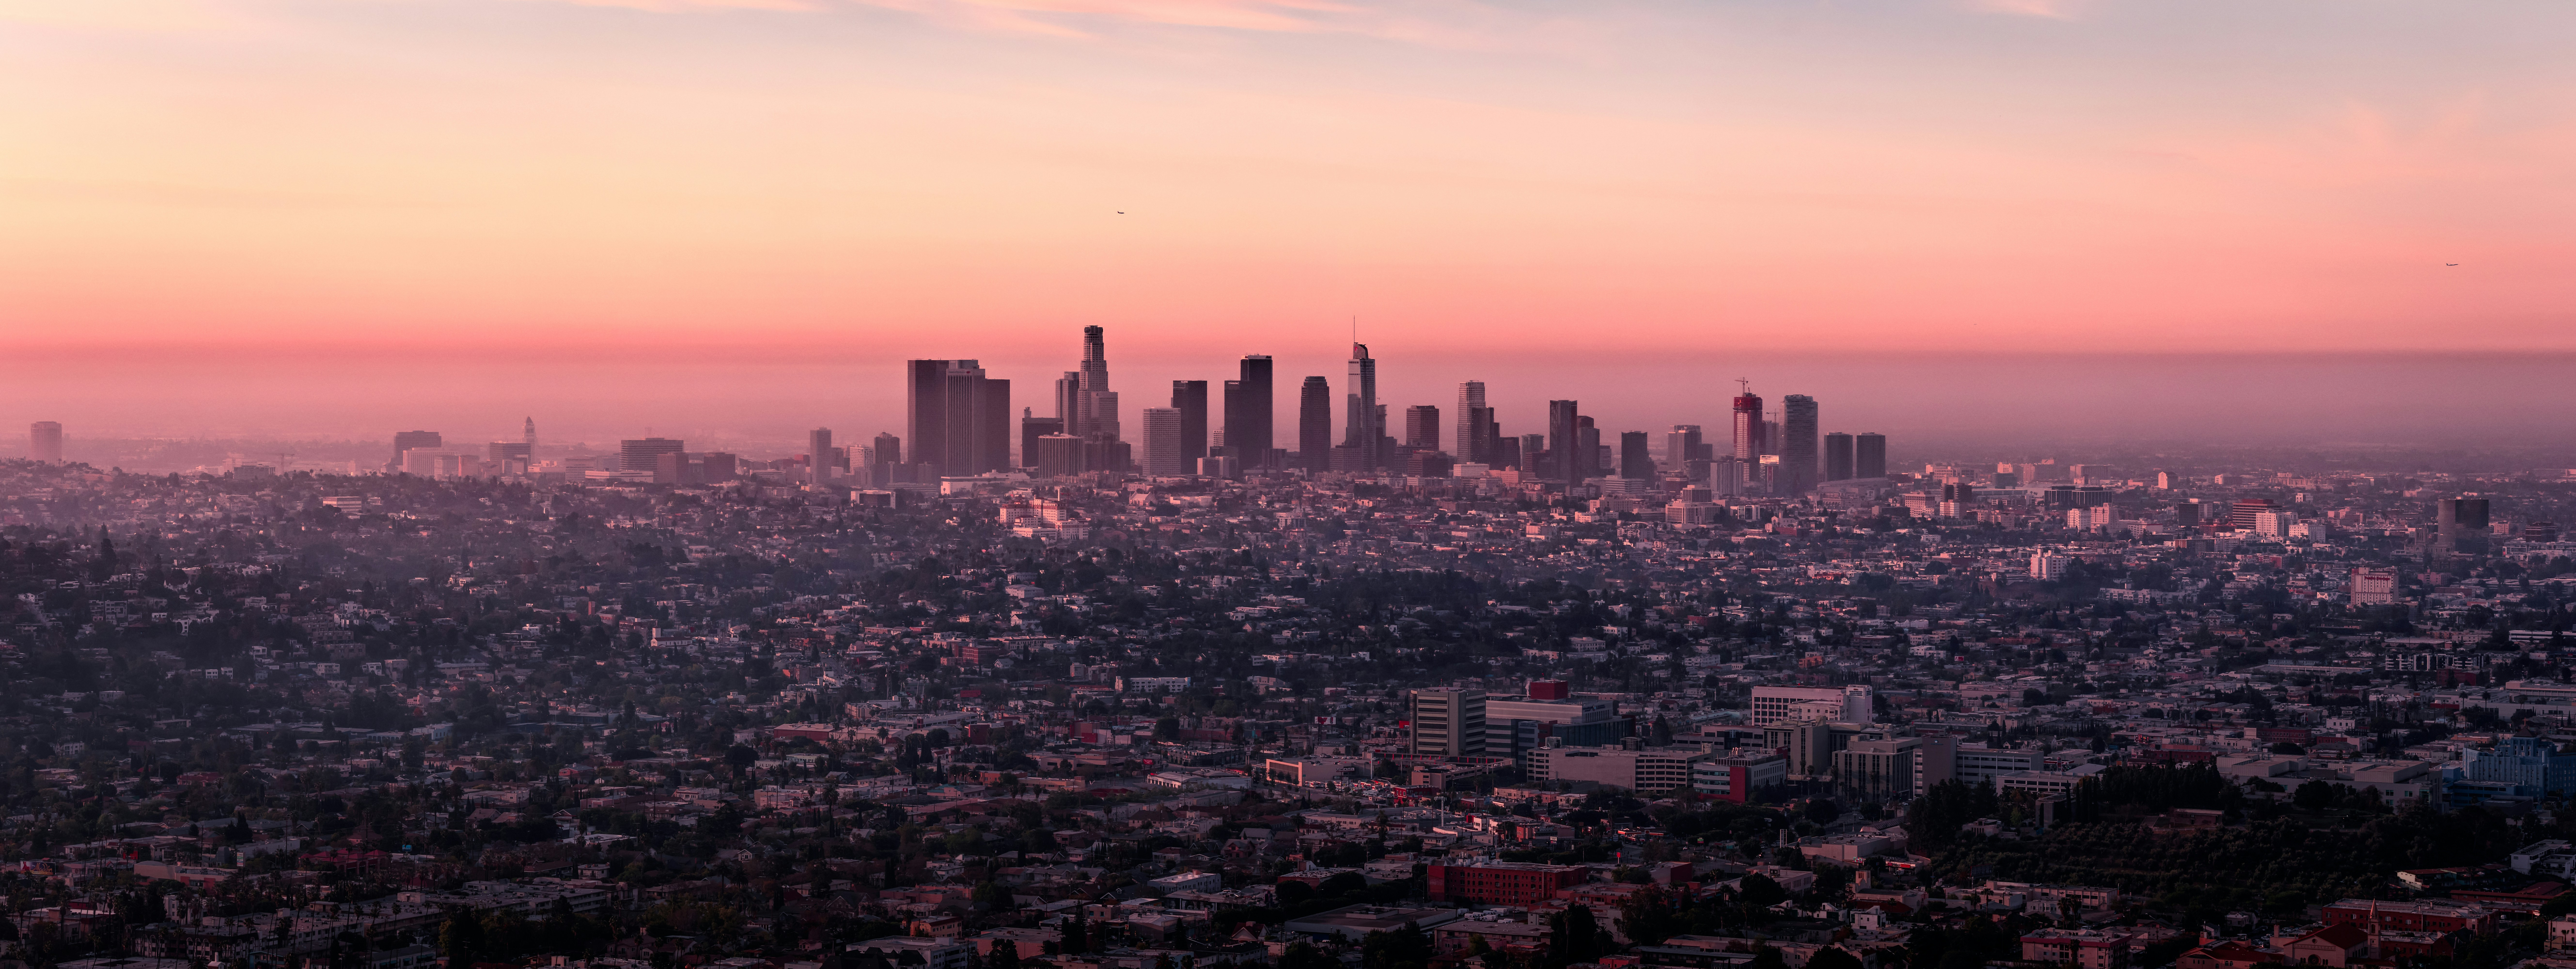 Los Angeles skyline at dusk.